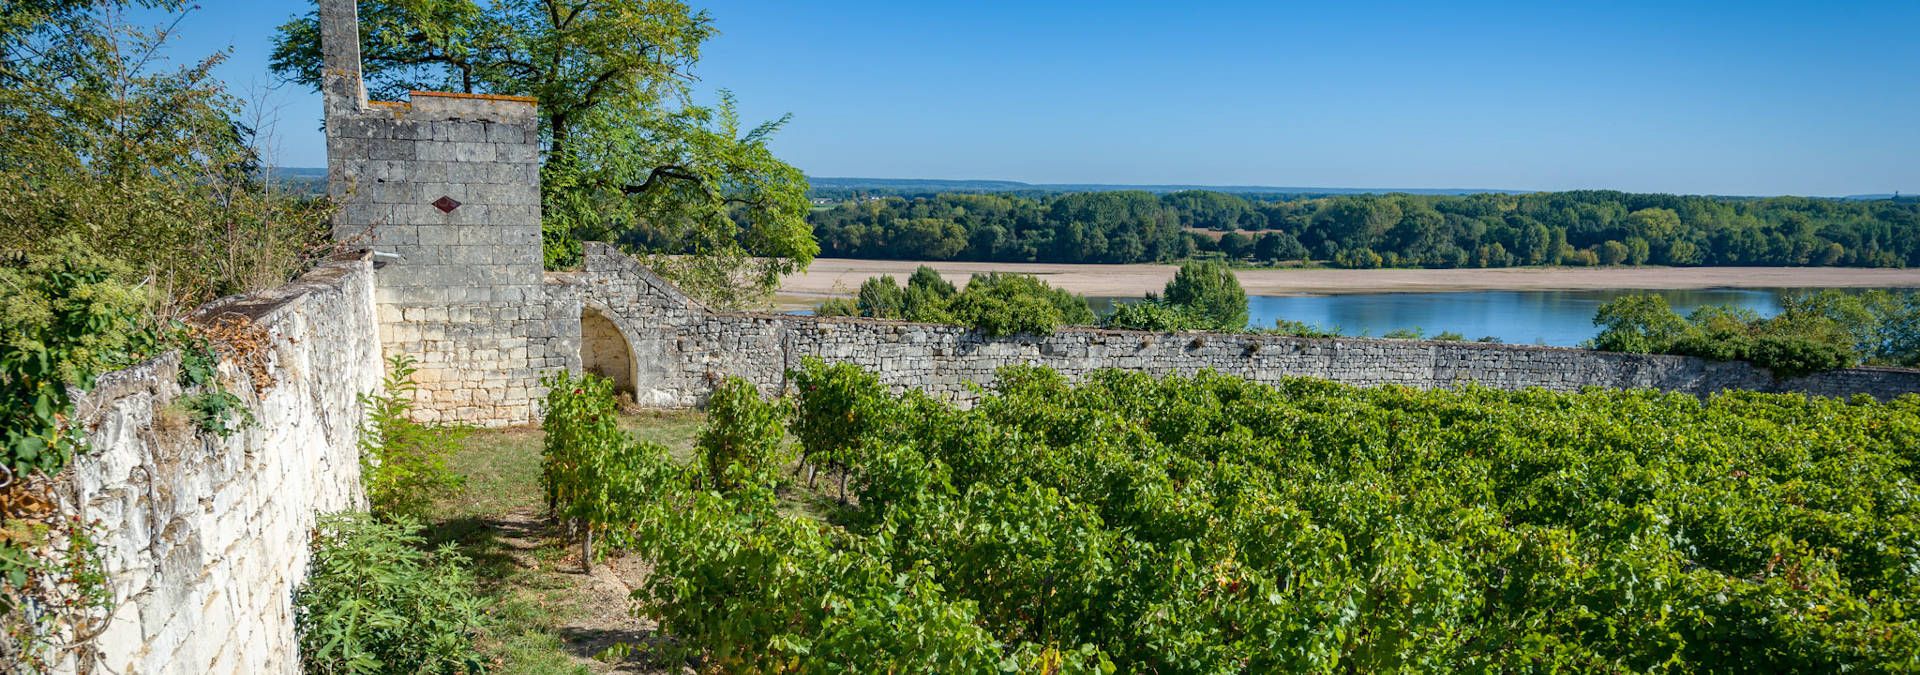 Domaine de la Perruche - Check winery's tour availabilities